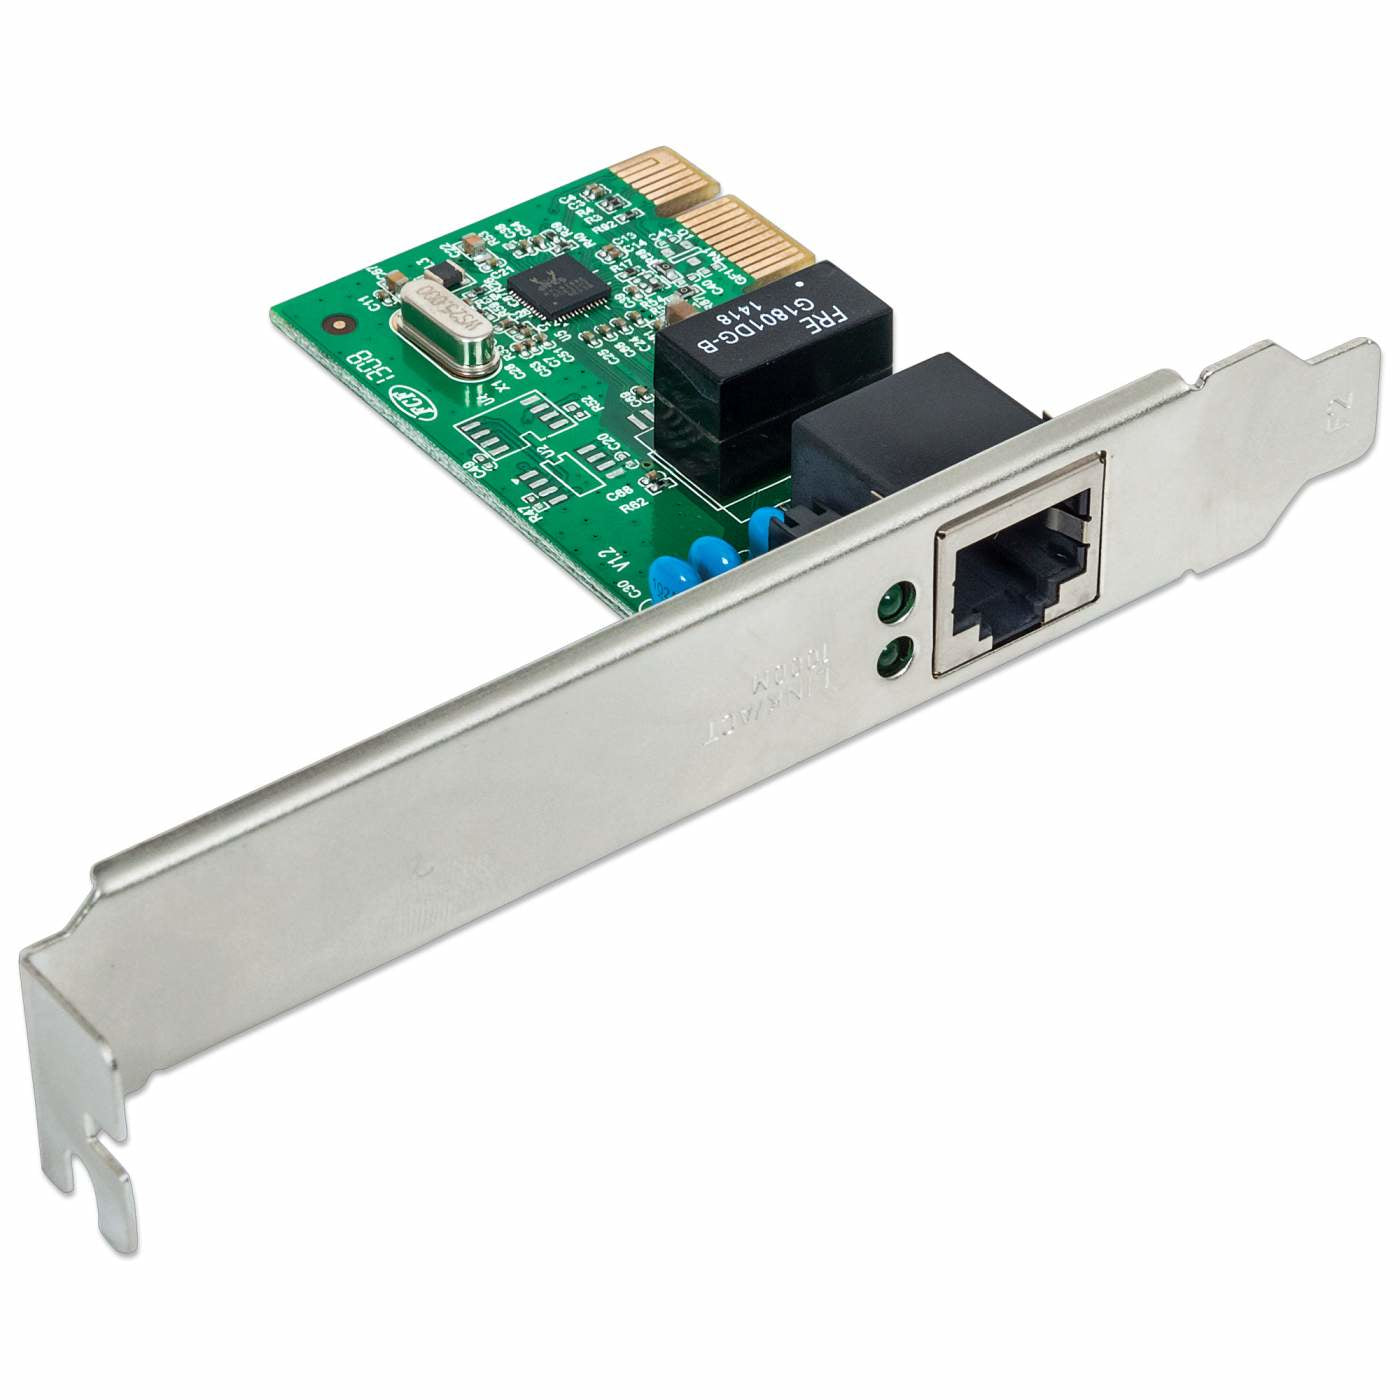 Tarjeta de Red Intellinet Gigabit Ethernet de 1 Puerto 522533, 1000 Mbit/s, PCI Express